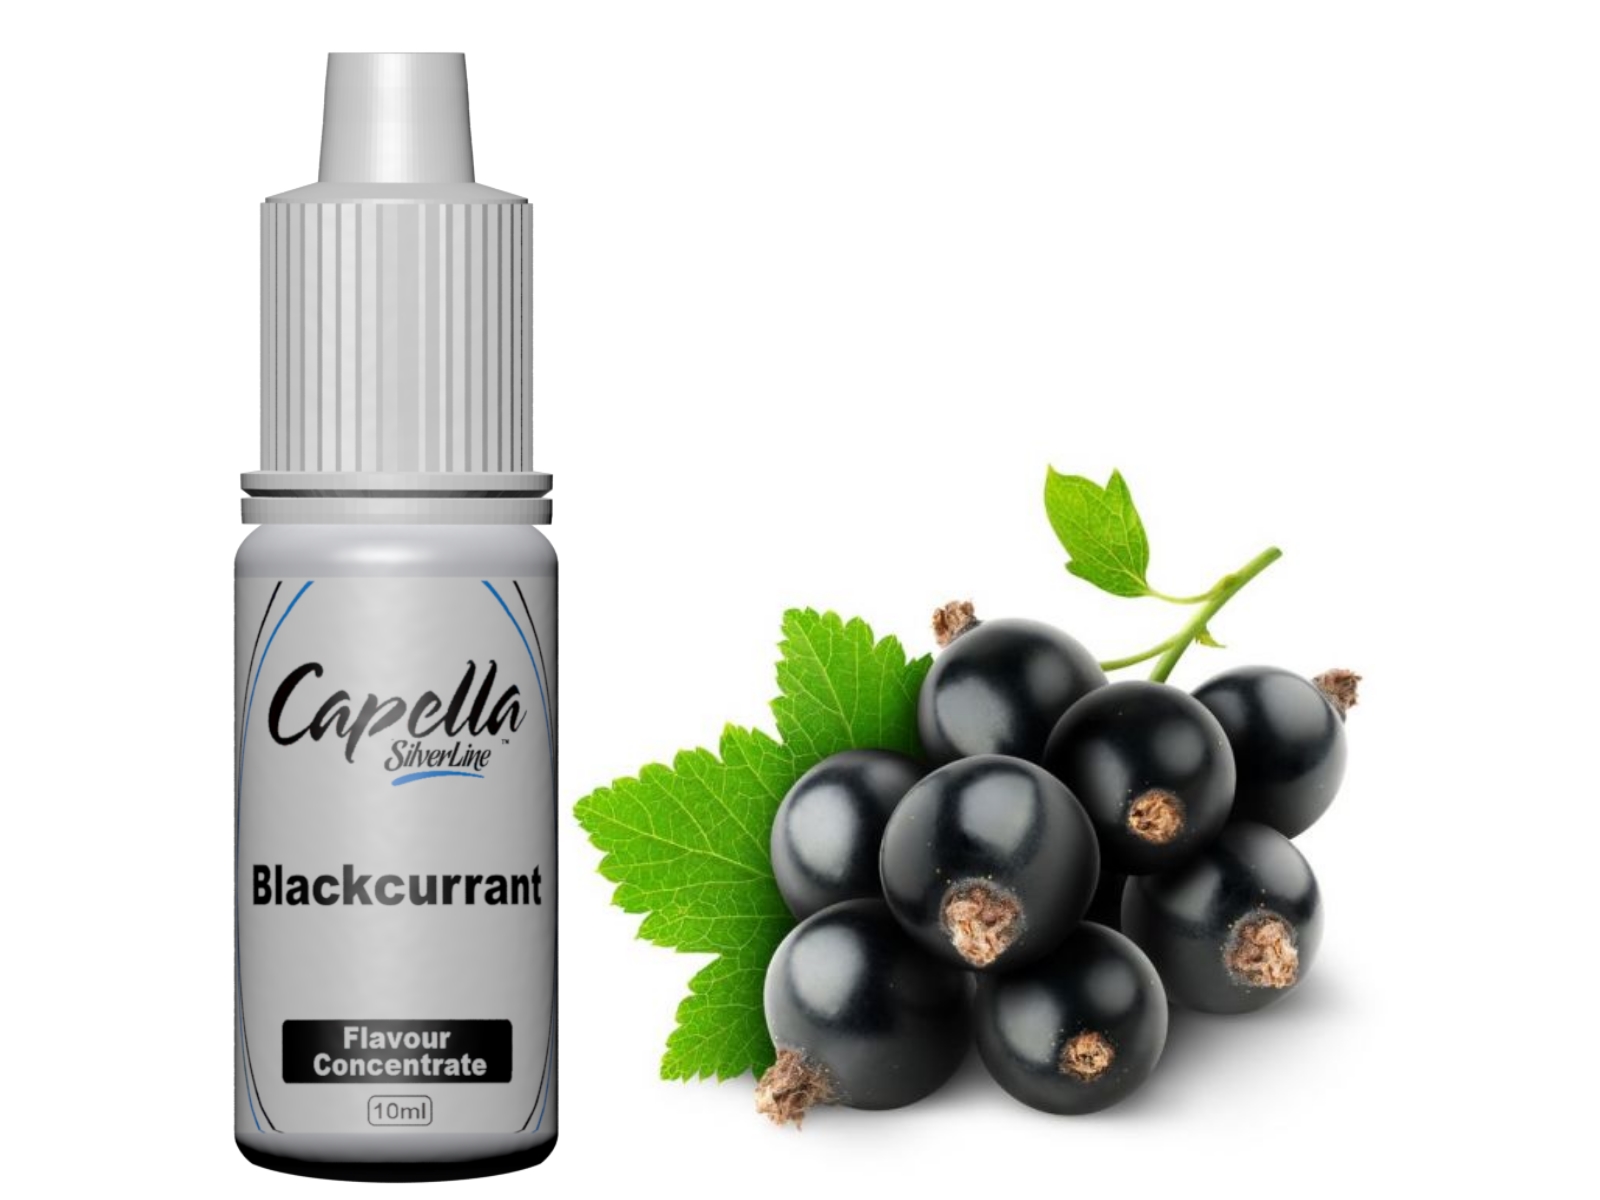 Capella Silverline Blackcurrant